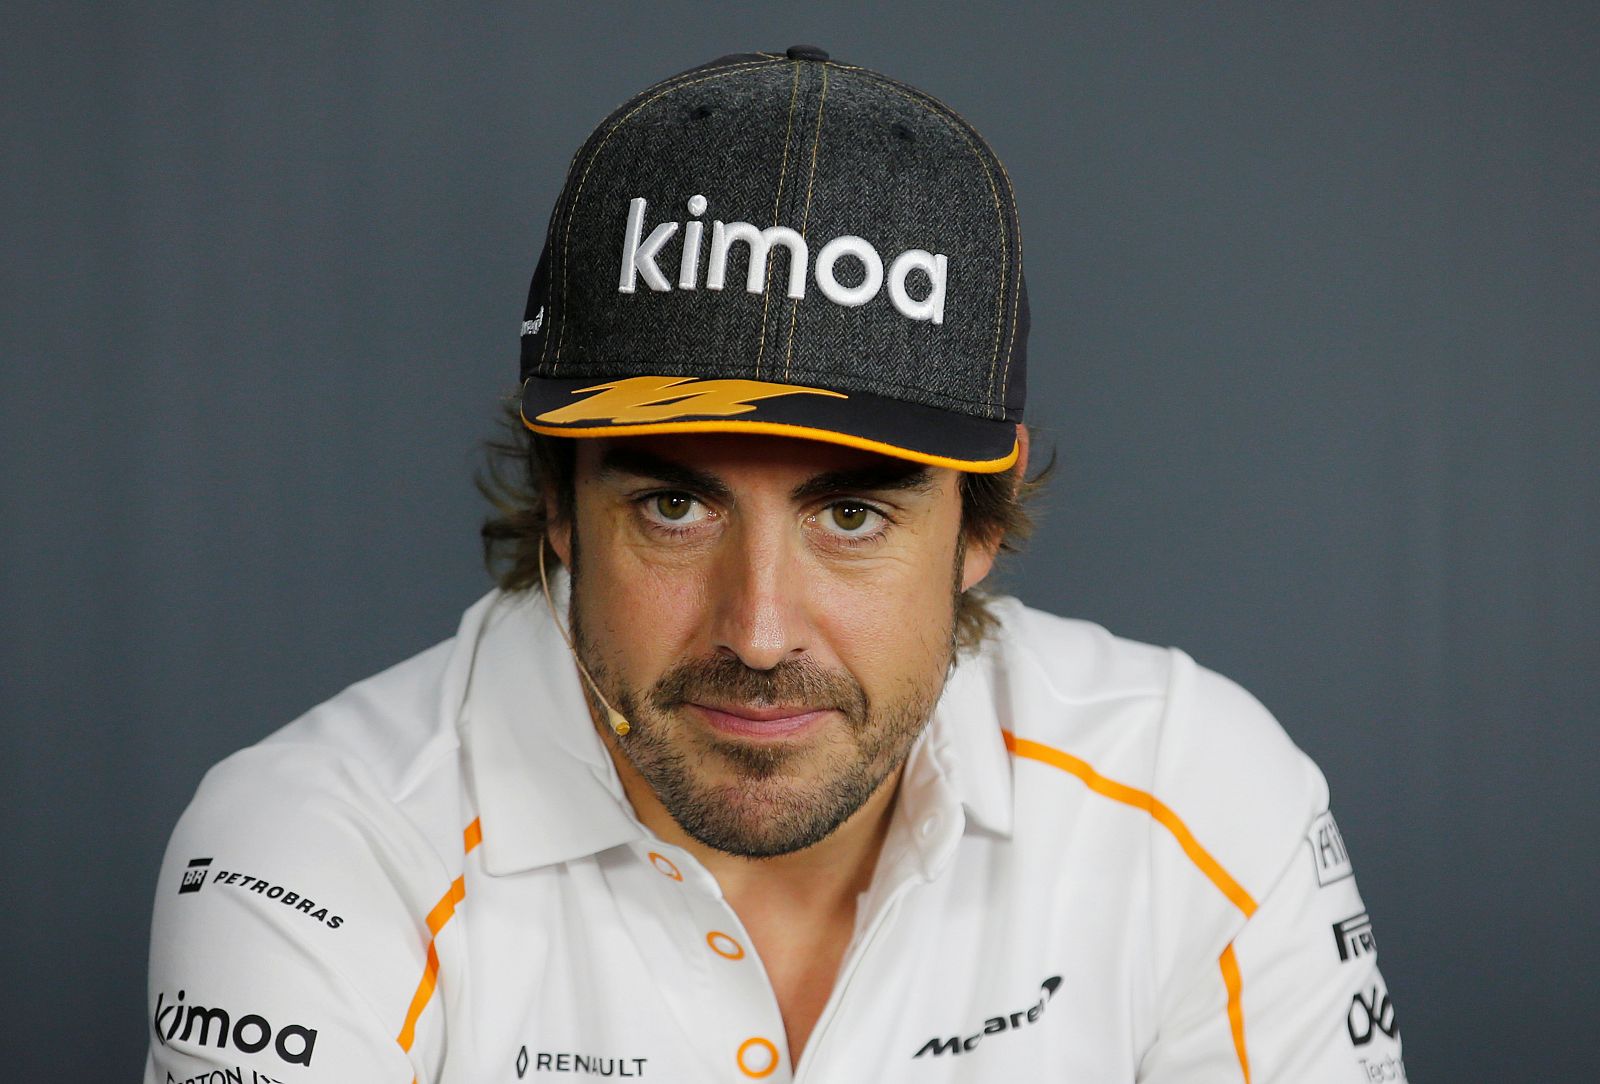 Imagen del piloto Fernando Alonso durante la rueda de prensa en el circuito Paul Ricard.